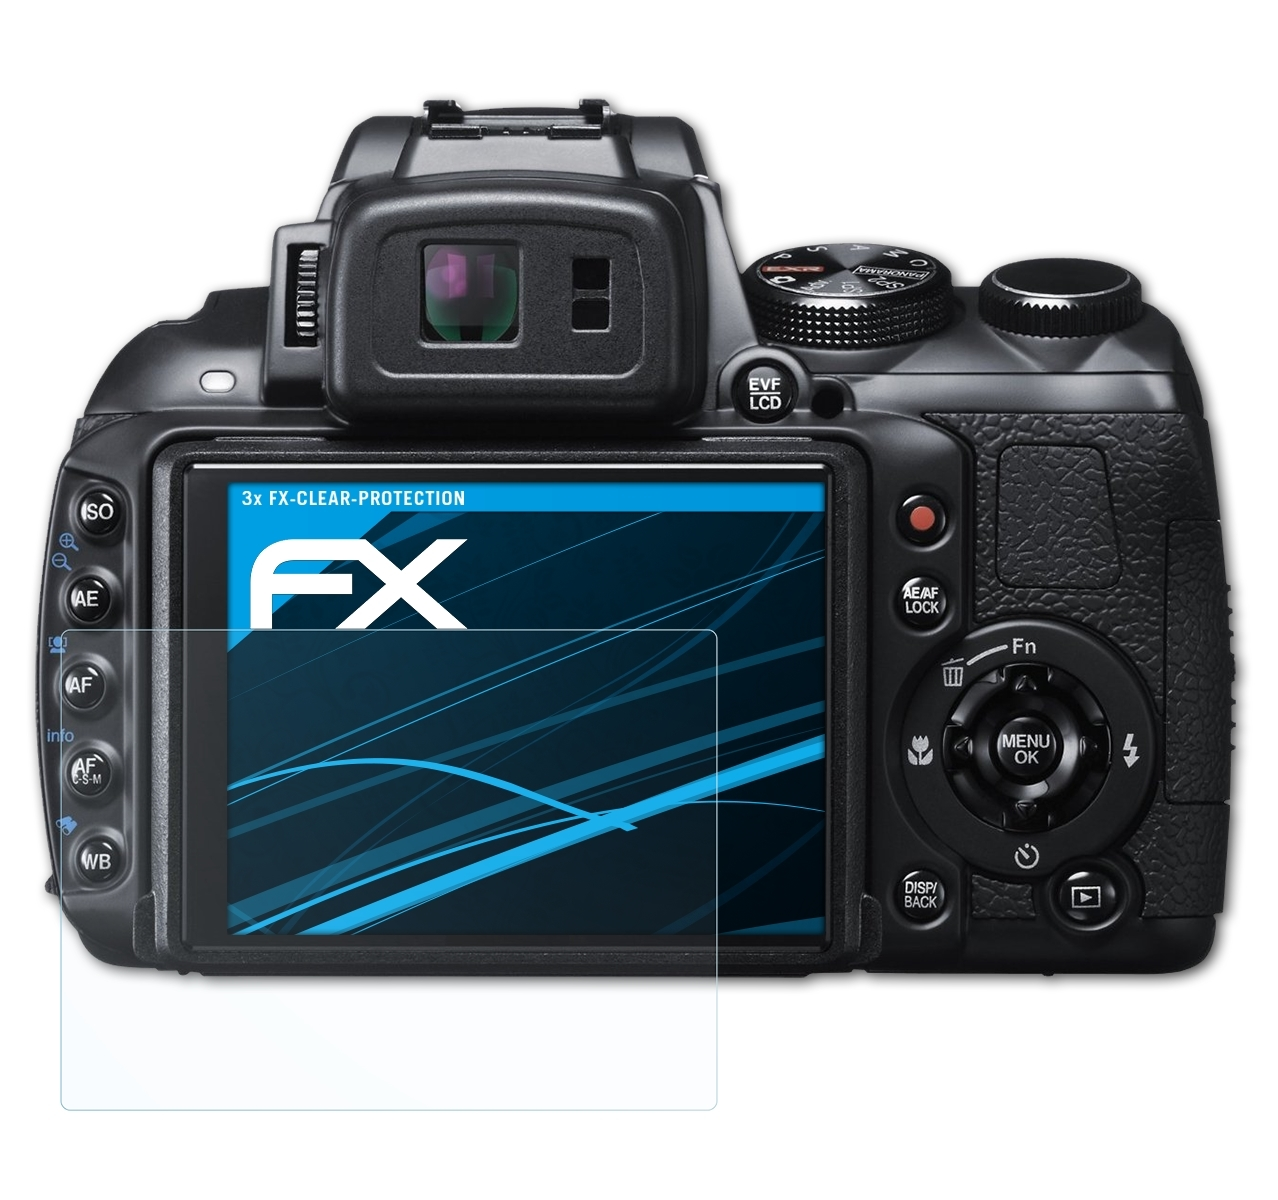 HS35EXR) Fujifilm Displayschutz(für ATFOLIX FX-Clear 3x FinePix